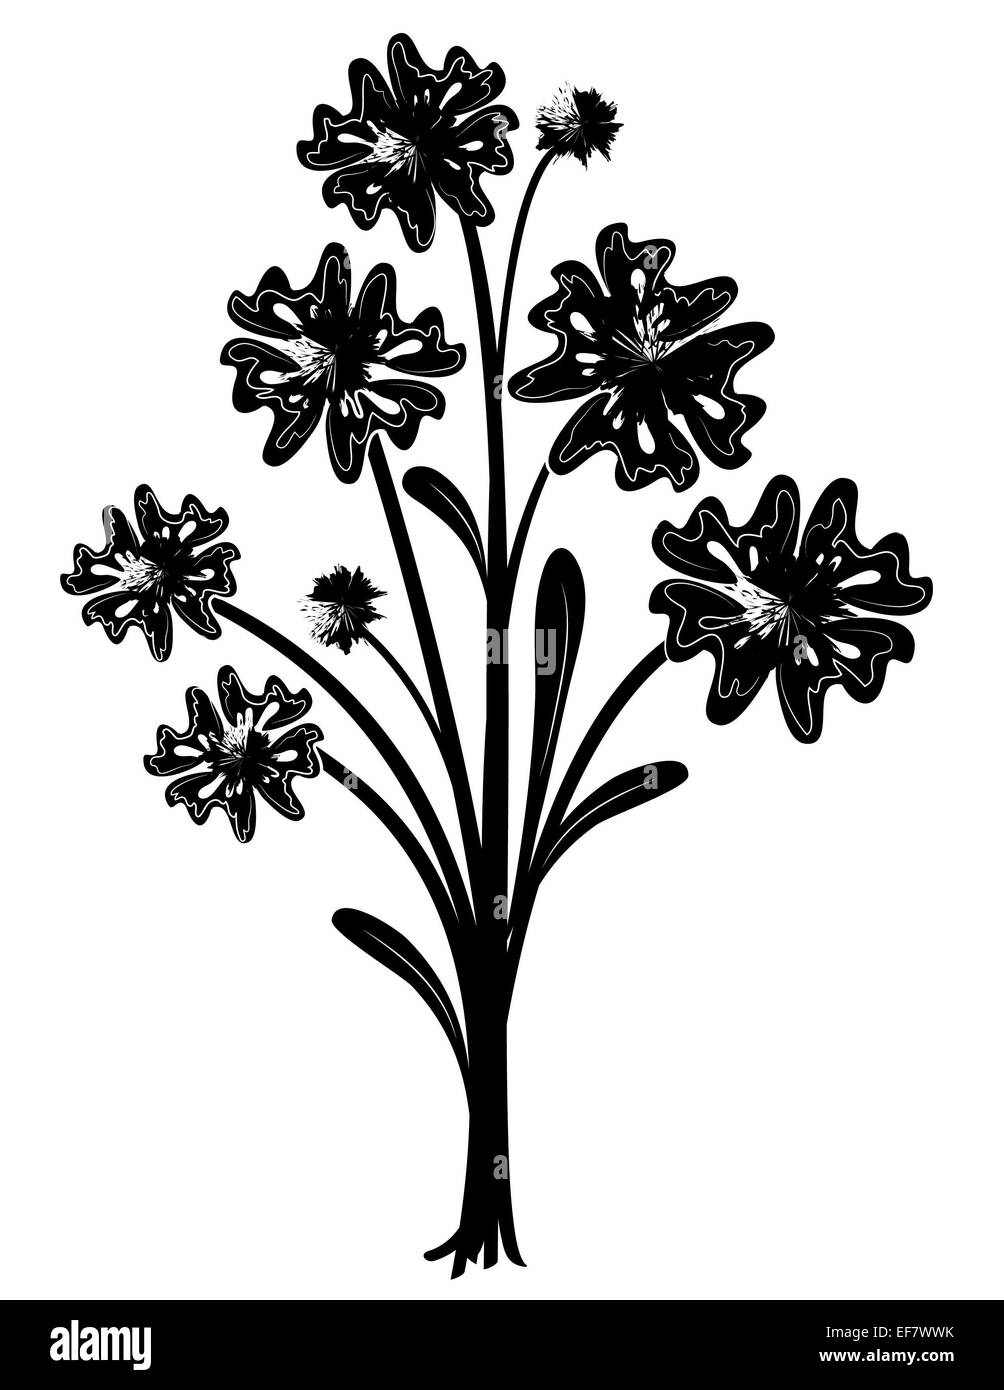 Illustration noir et blanc d'un bouquet de fleurs avec huit feuilles ludique prêt à mettre dans un vase Banque D'Images